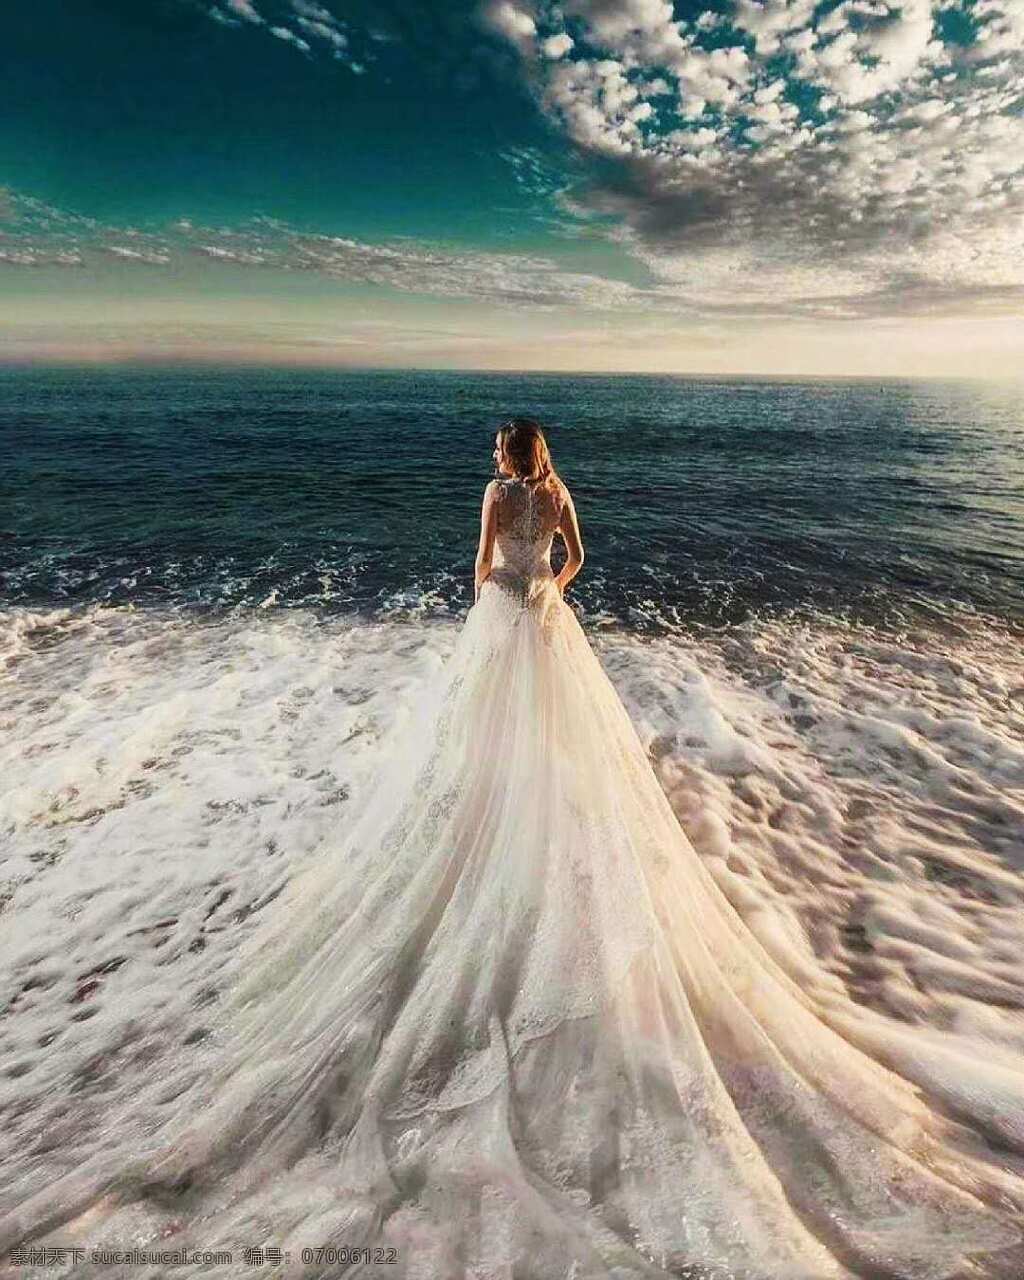 婚纱照 女王 婚纱 沙滩 白色长裙 海边风景 女人 旅游摄影 国内旅游